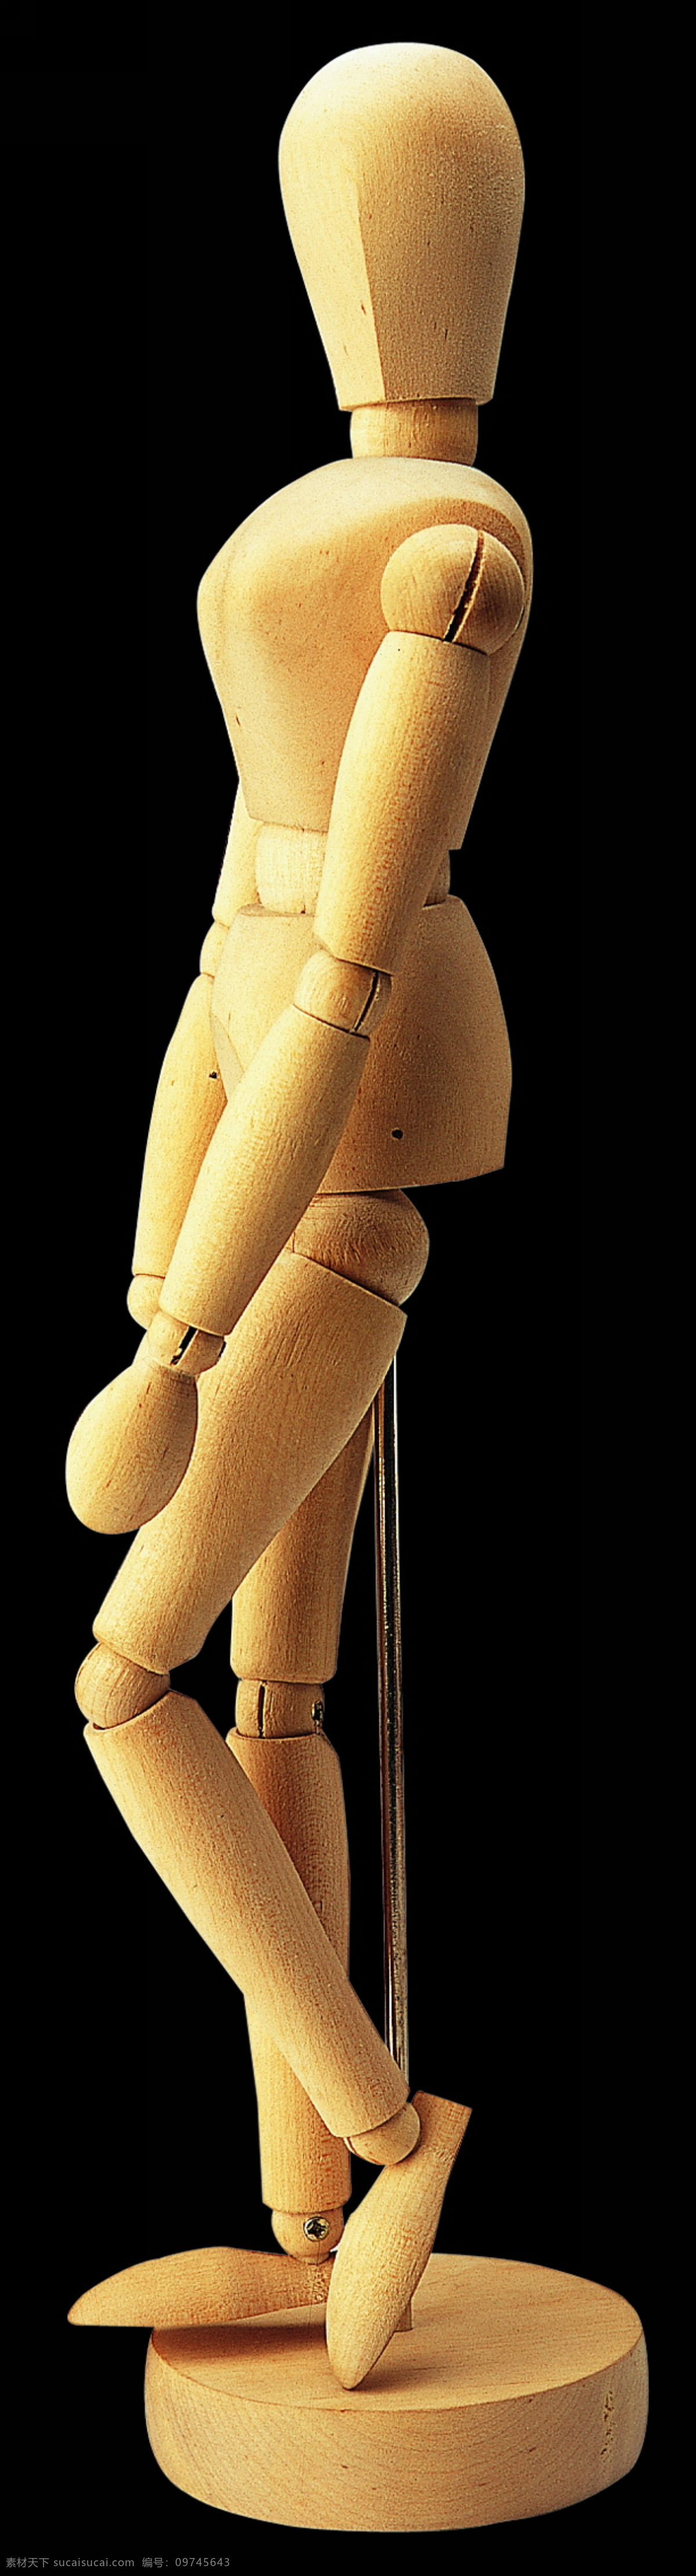 侧身 姿势 木偶 侧身姿势木偶 木头 人物 神态 动作 木雕 作品 木偶玩具 工艺品 文化艺术